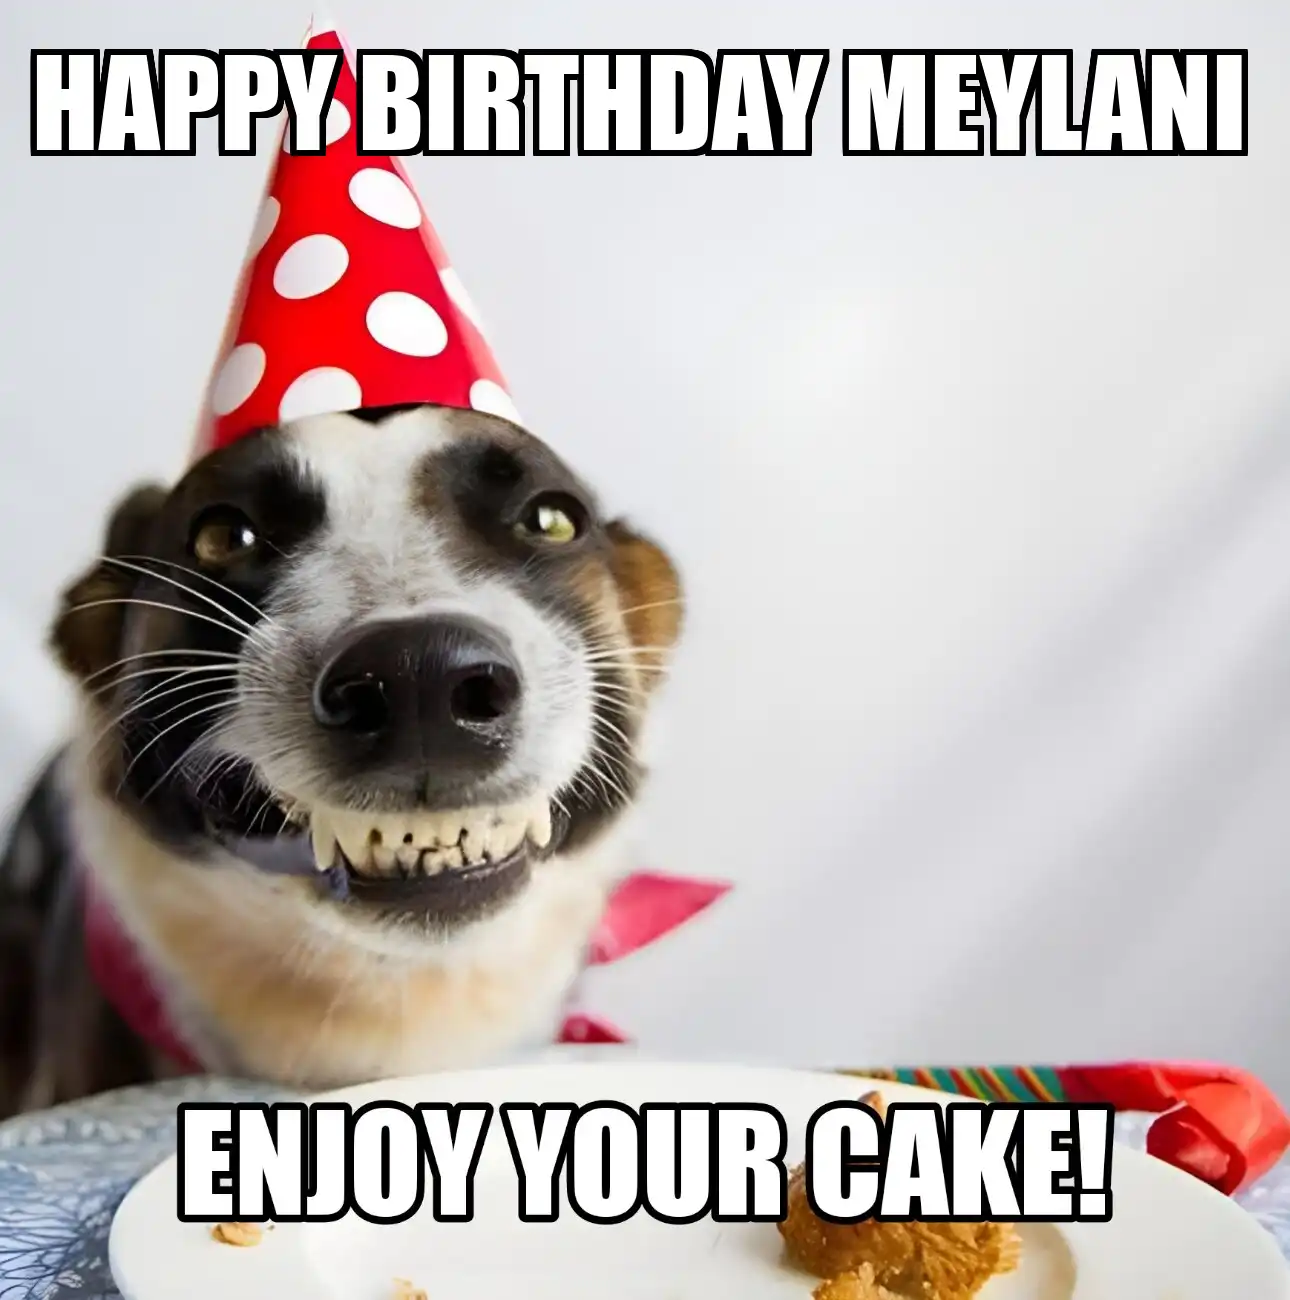 Happy Birthday Meylani Enjoy Your Cake Dog Meme